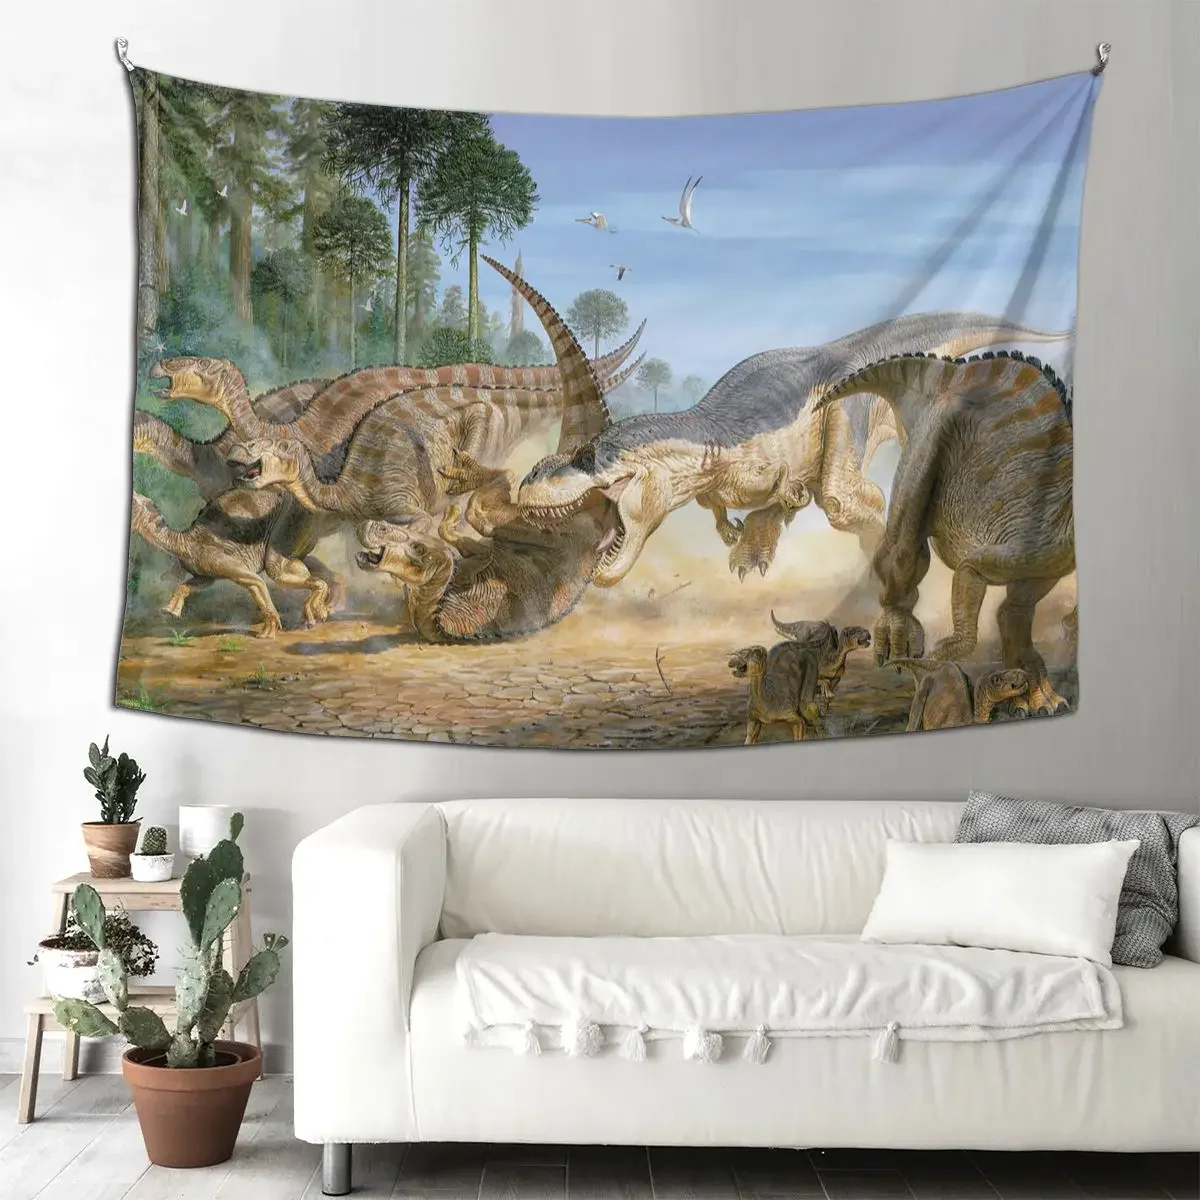 

Гобелен с животными, динозаврами, настенный тканевый гобелен в стиле хиппи, художественное одеяло с динозаврами, декор для комнаты, гобелен